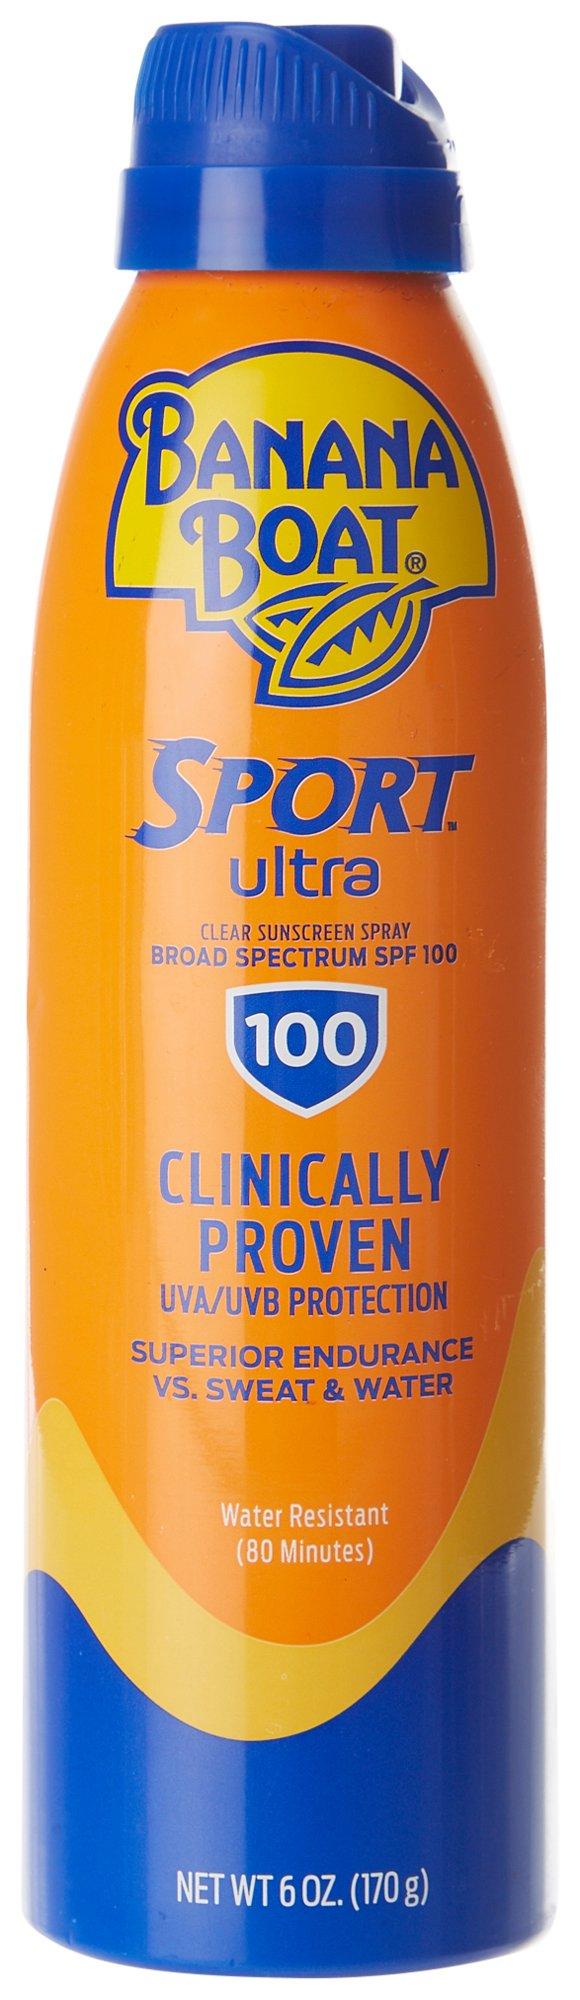 Banana Boat Sport Ultra SPF 100 Clear Sunscreen Spray